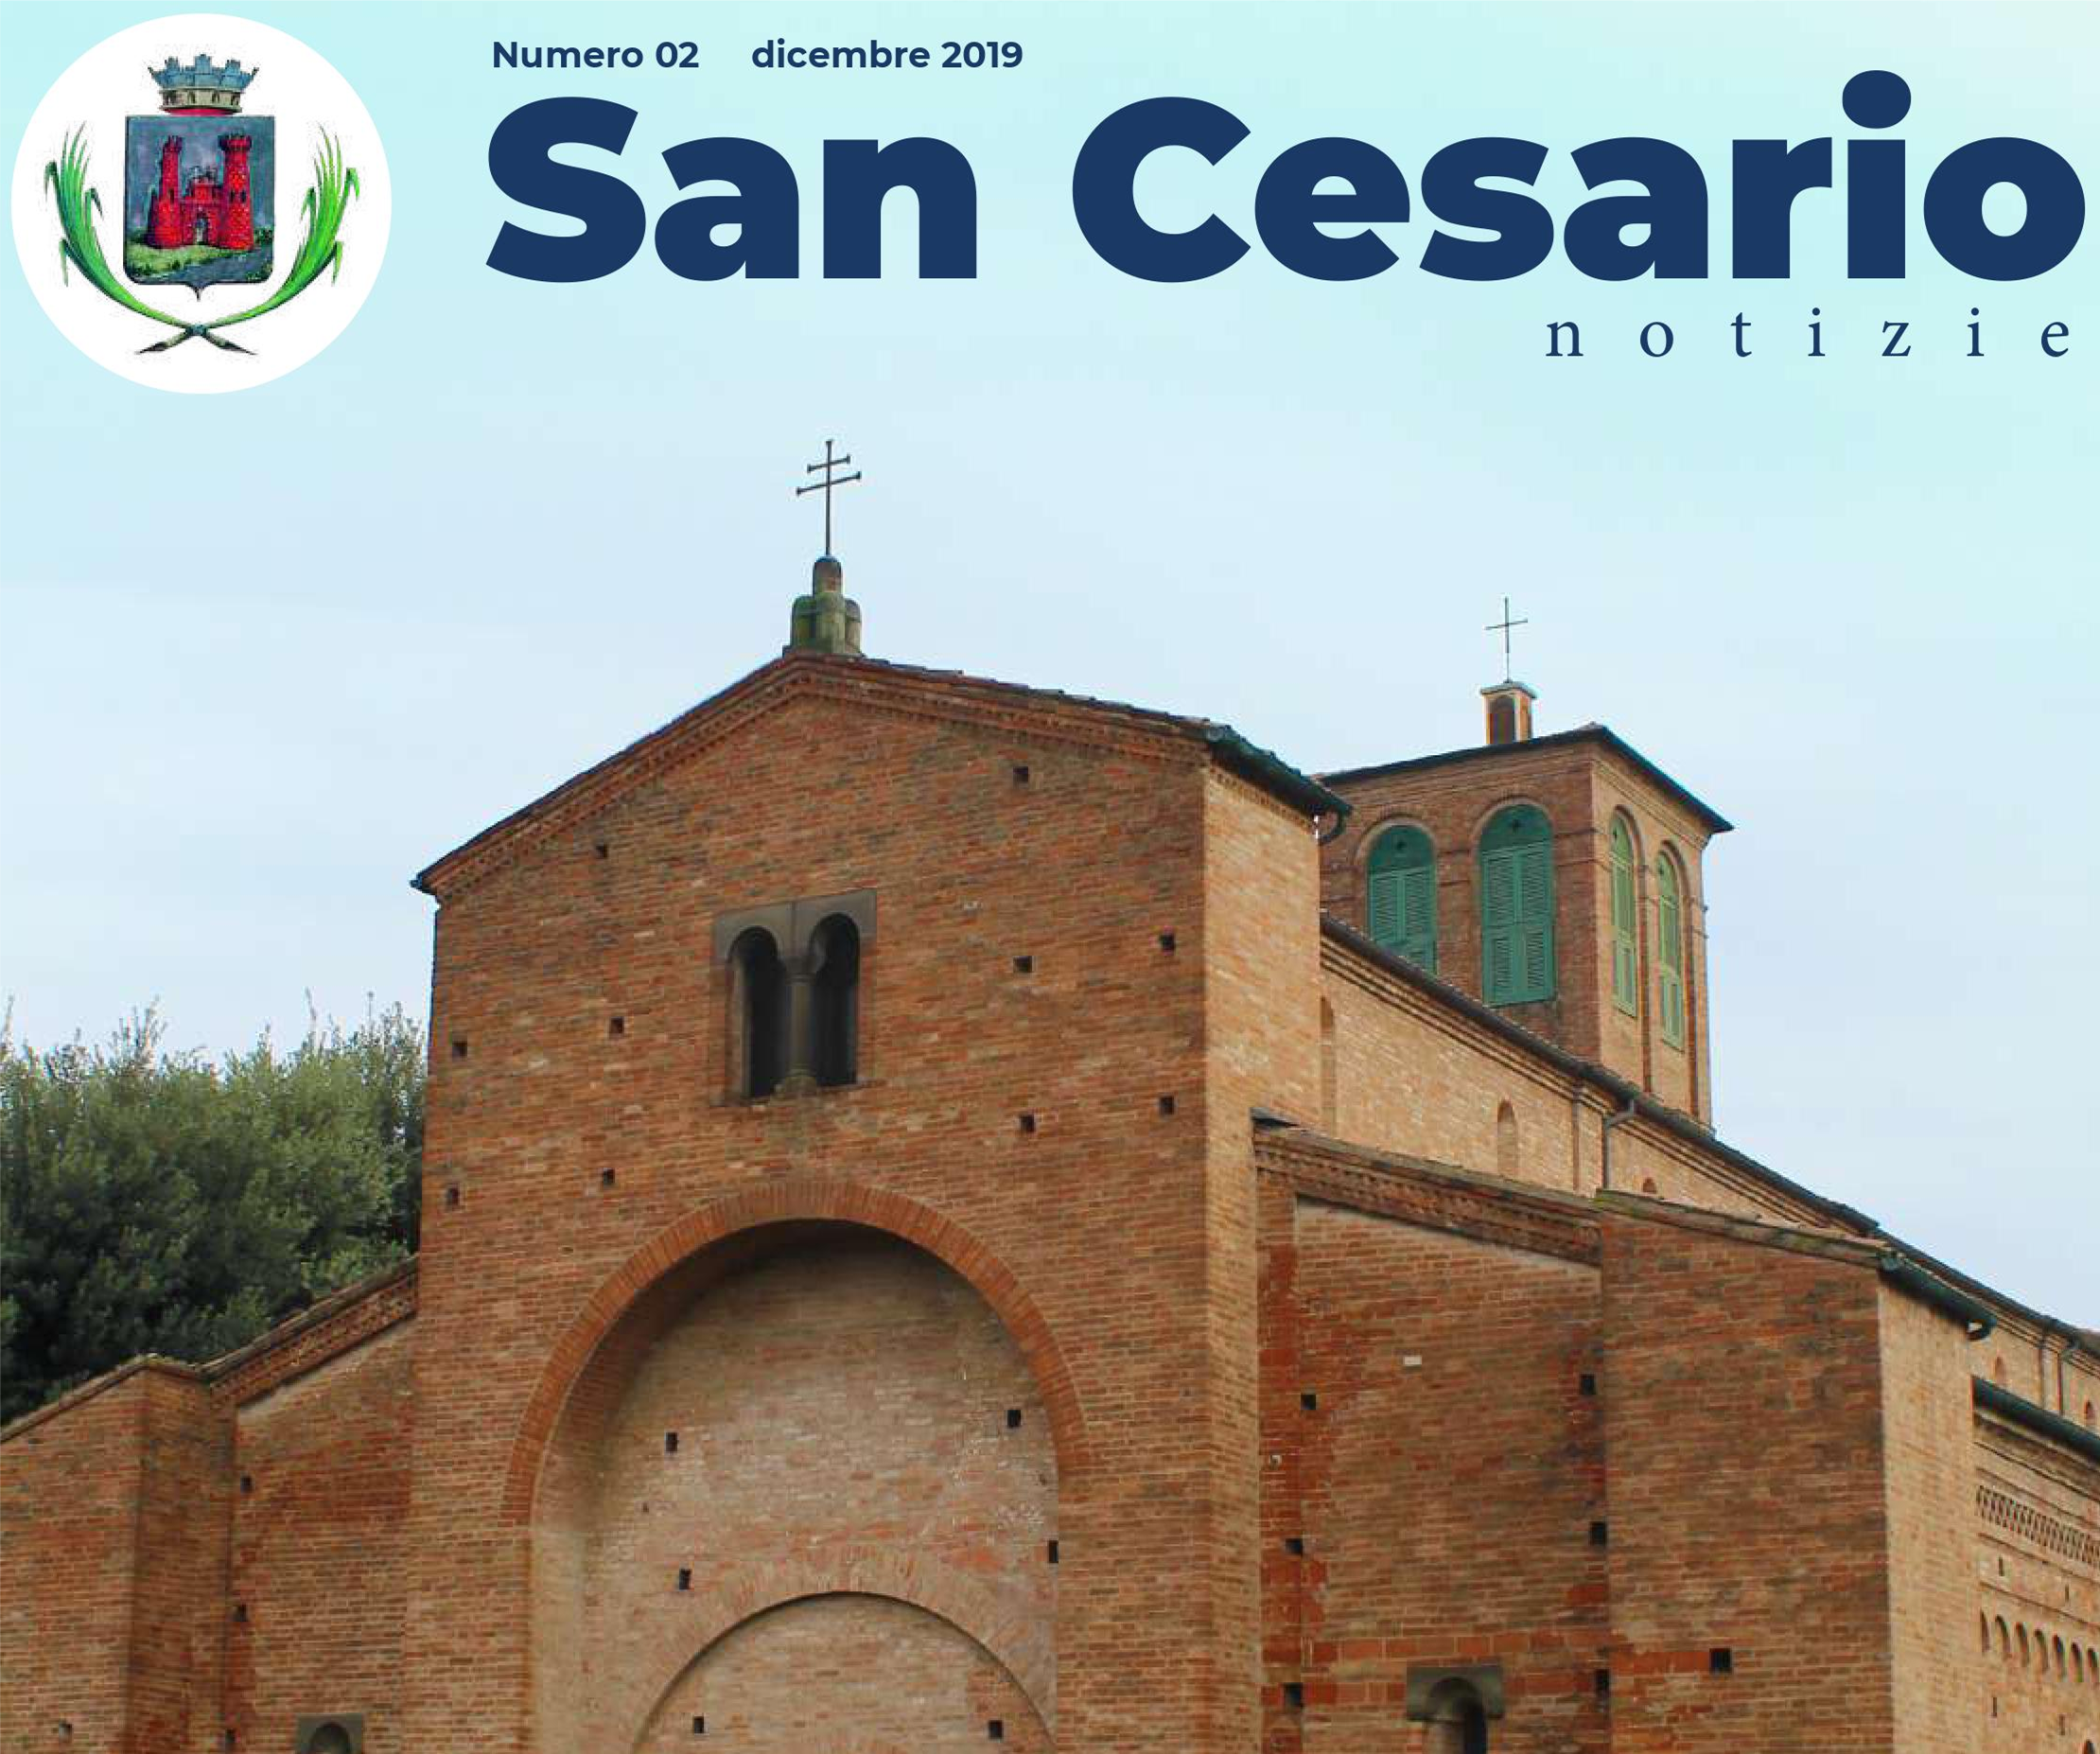 San Cesario Notizie - dicembre 2019 foto 